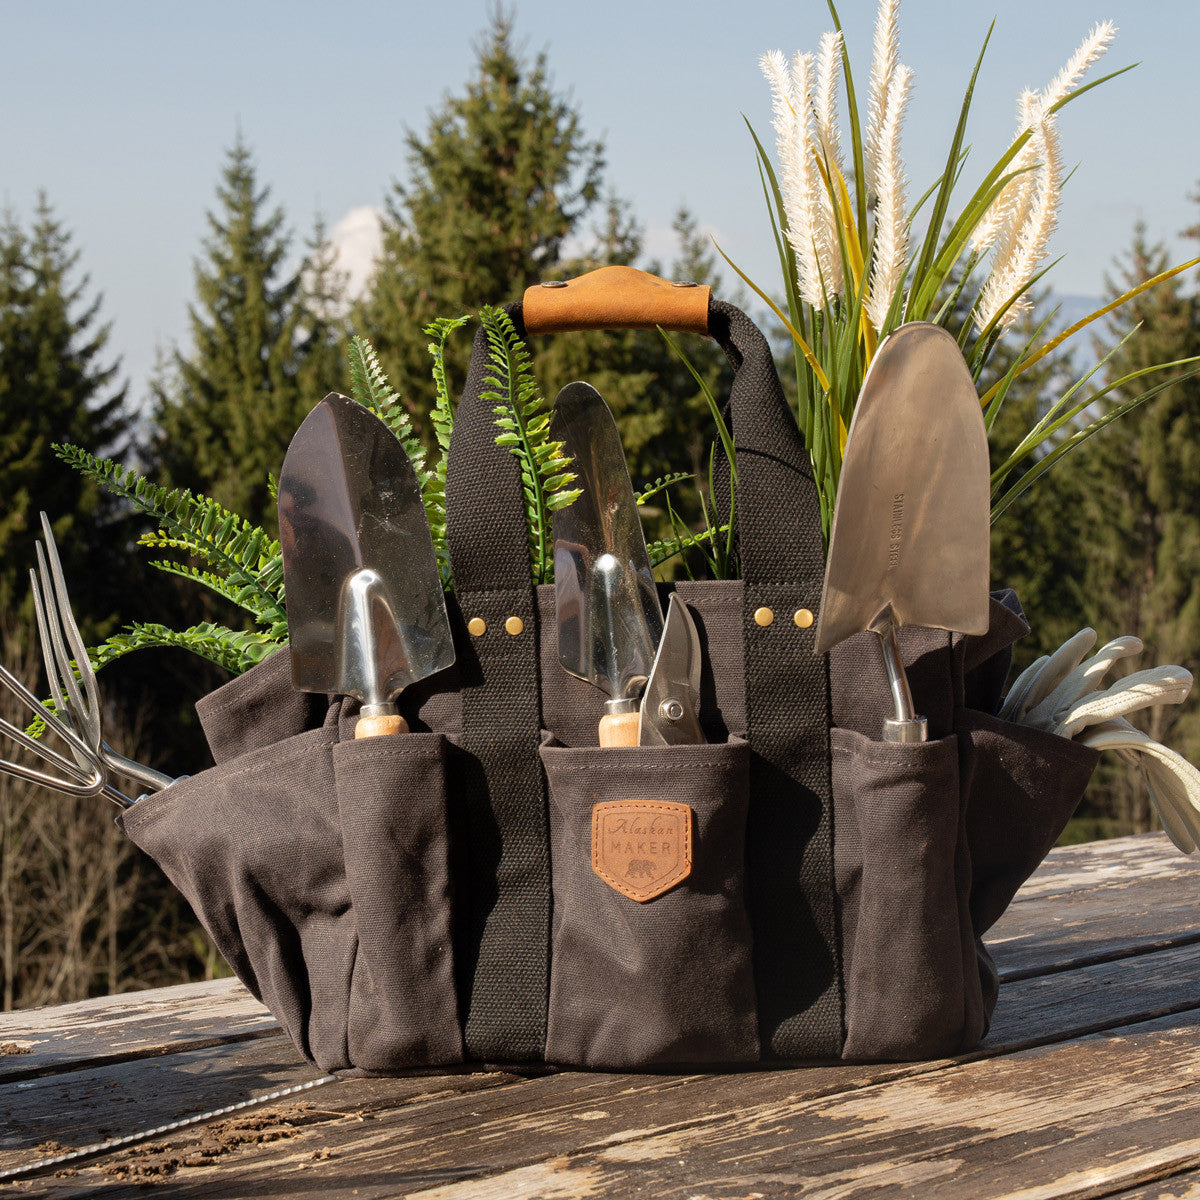 ALASKAN MAKER Gardener Tool Bag